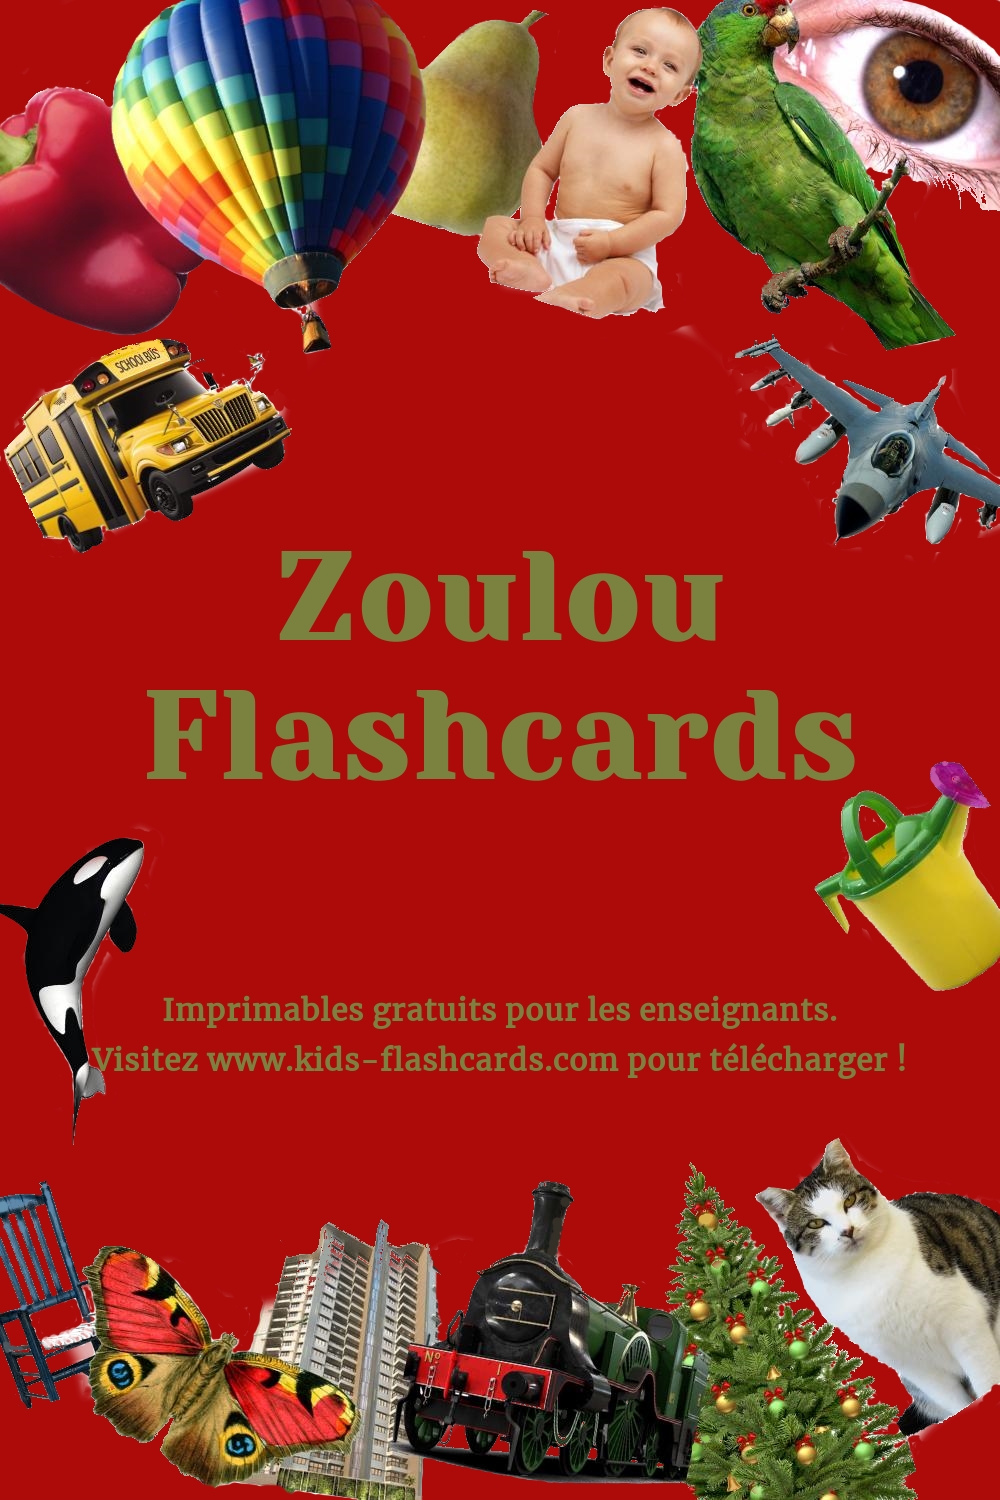 Imprimables gratuits en Zoulou